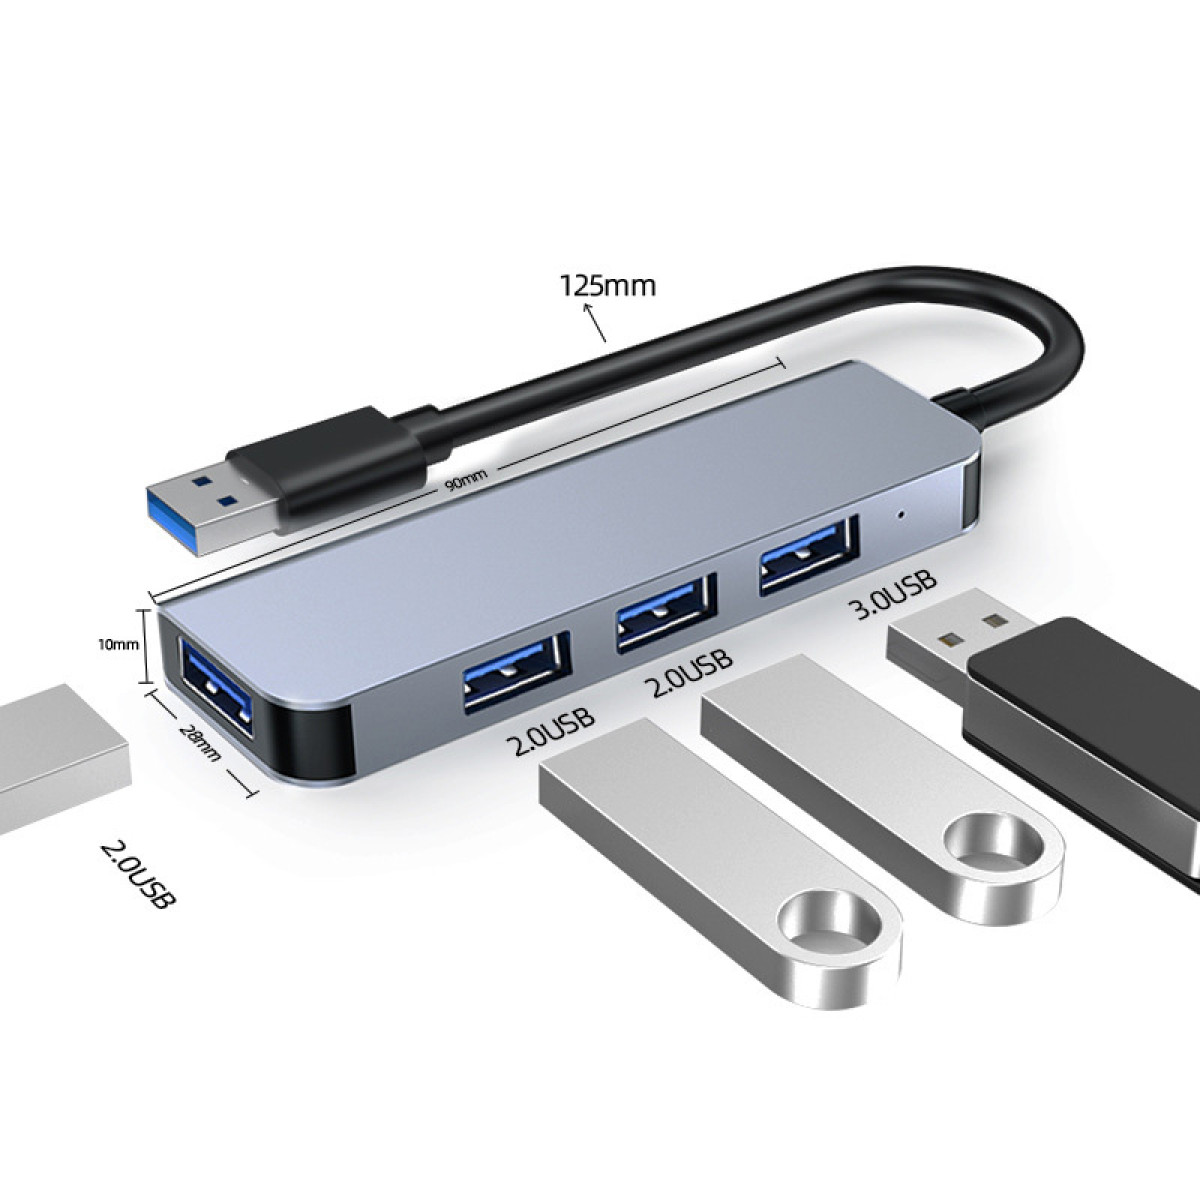 INF USB-Hub Silbergrau USB3.0-Port 1 und USB-Hub, USB2.0-Ports 3 mit